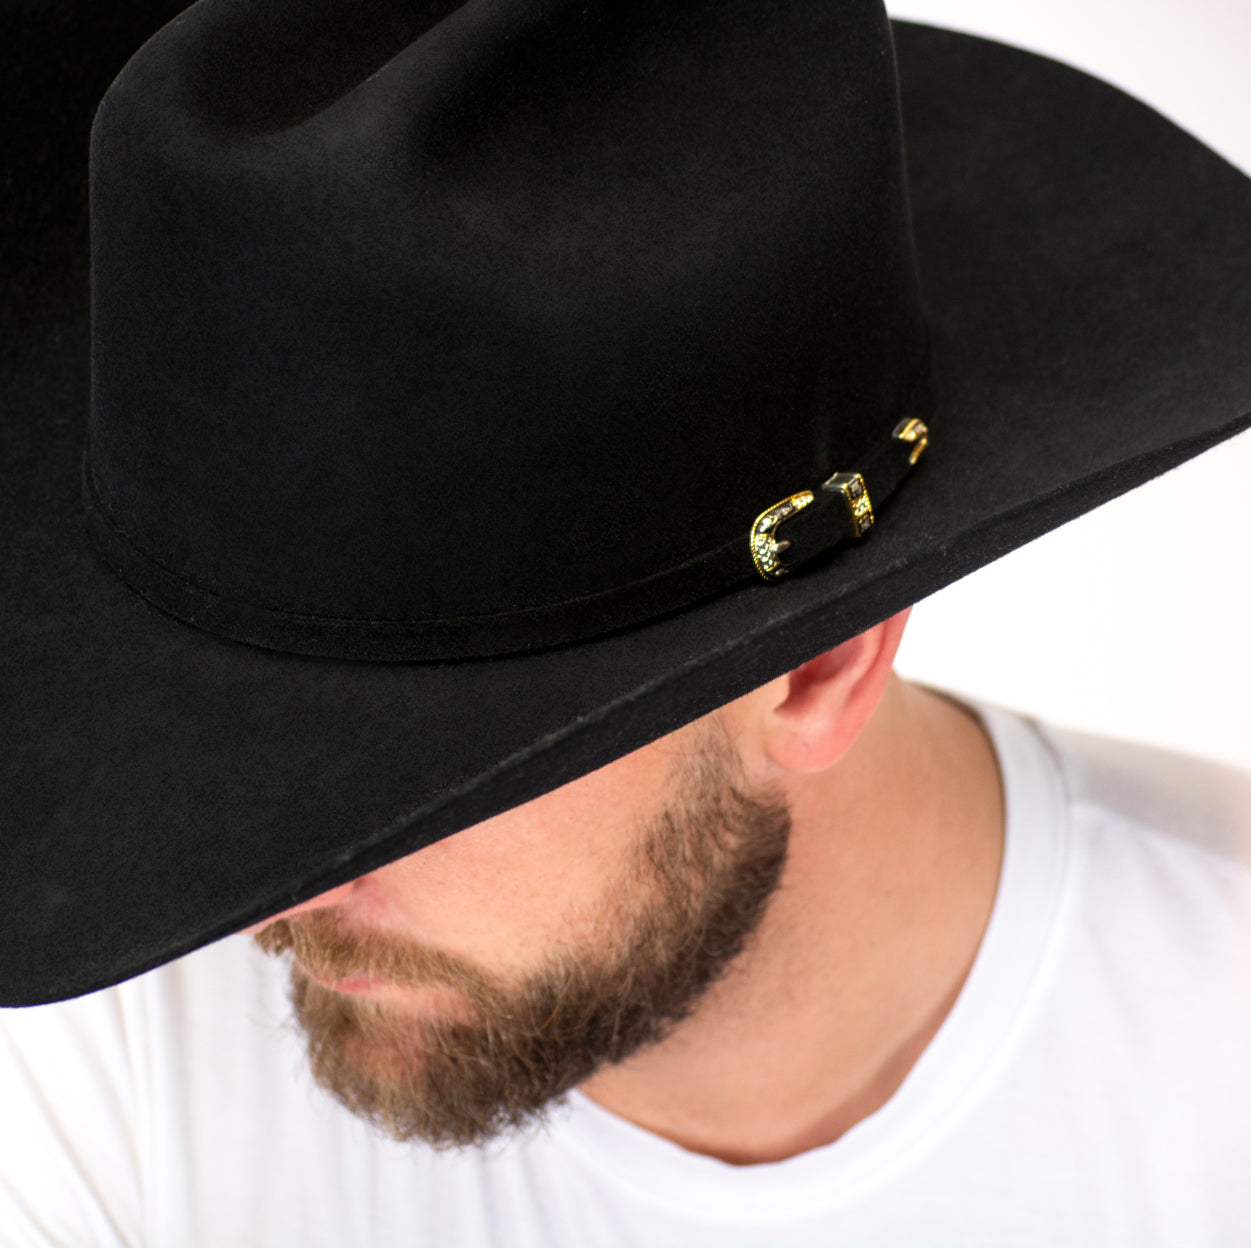 Qué significan las x en los sombreros vaqueros?